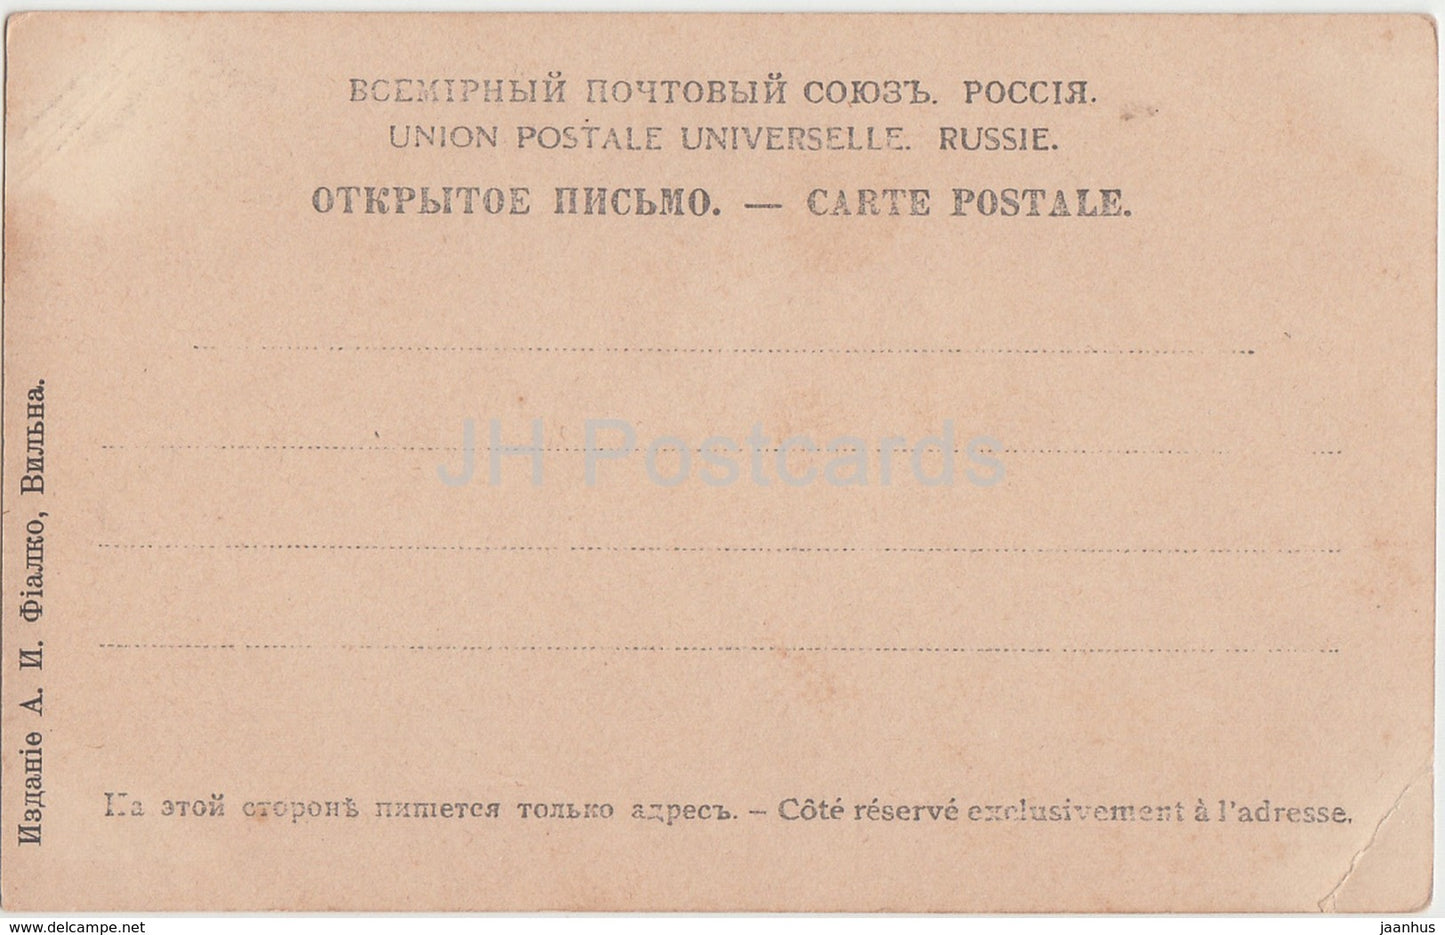 Célèbre chanteur d'opéra italien Delli Abbati - carte postale ancienne - Russie impériale - inutilisée